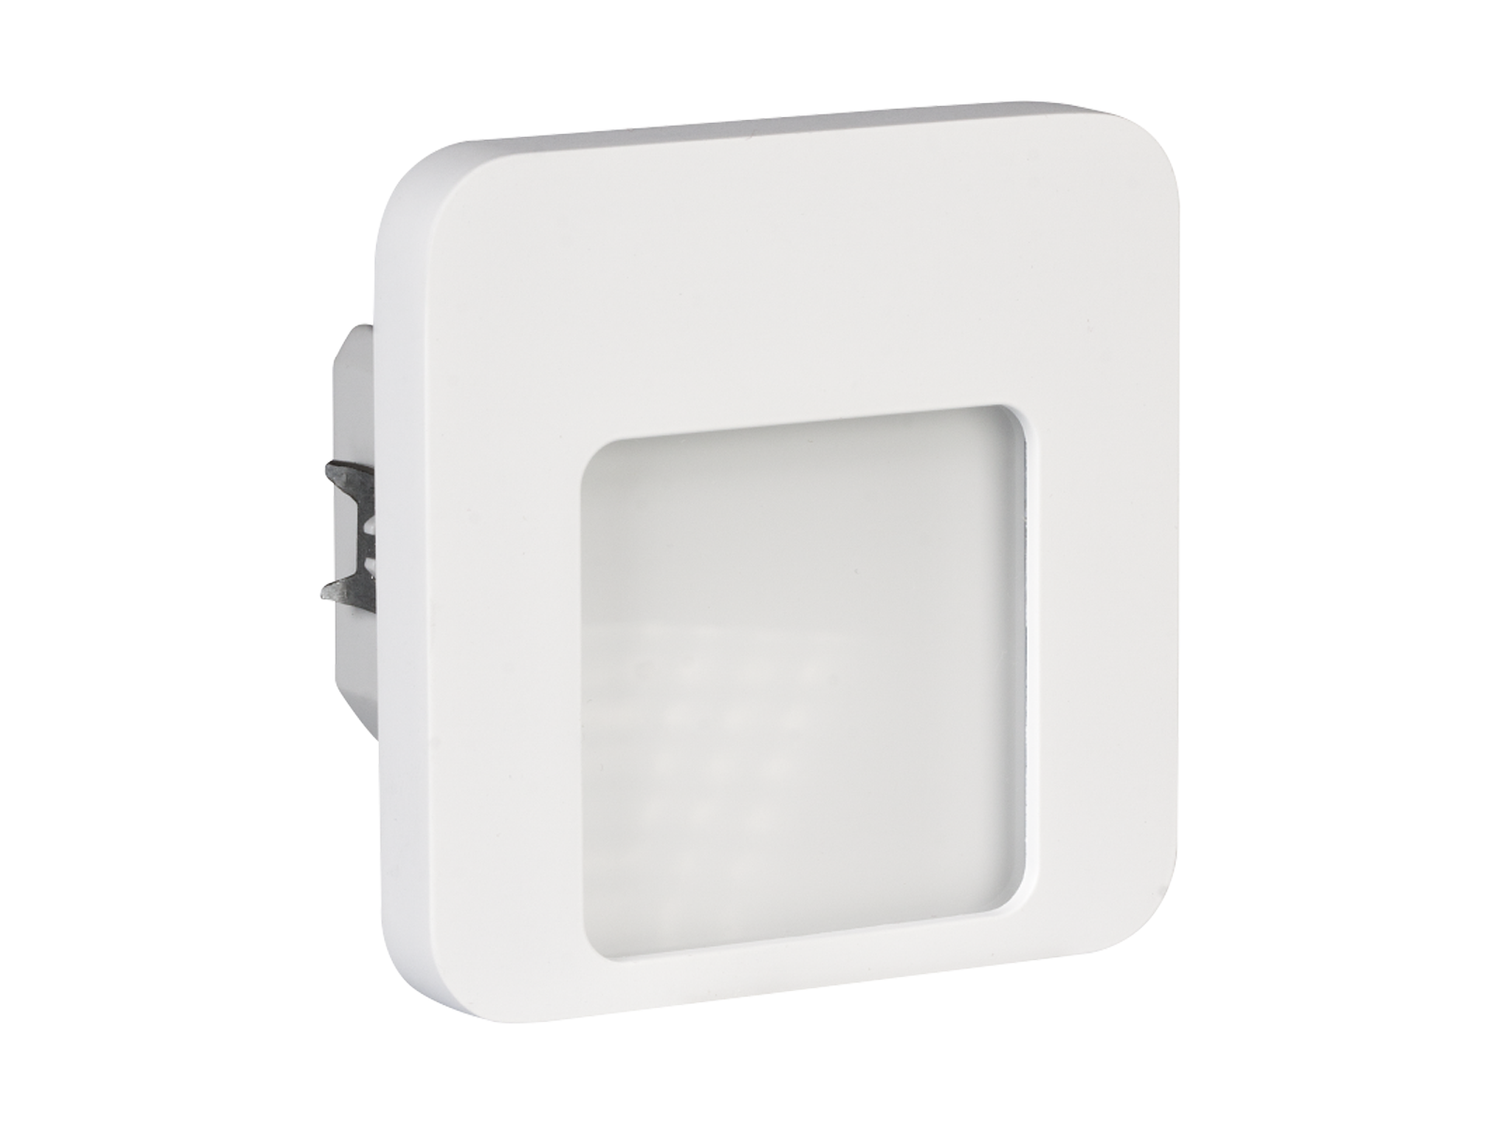 Svítidlo LED do KU krabice pod omítku LEDIX MOZA 230V AC, bílá, neutrální bílá, IP20